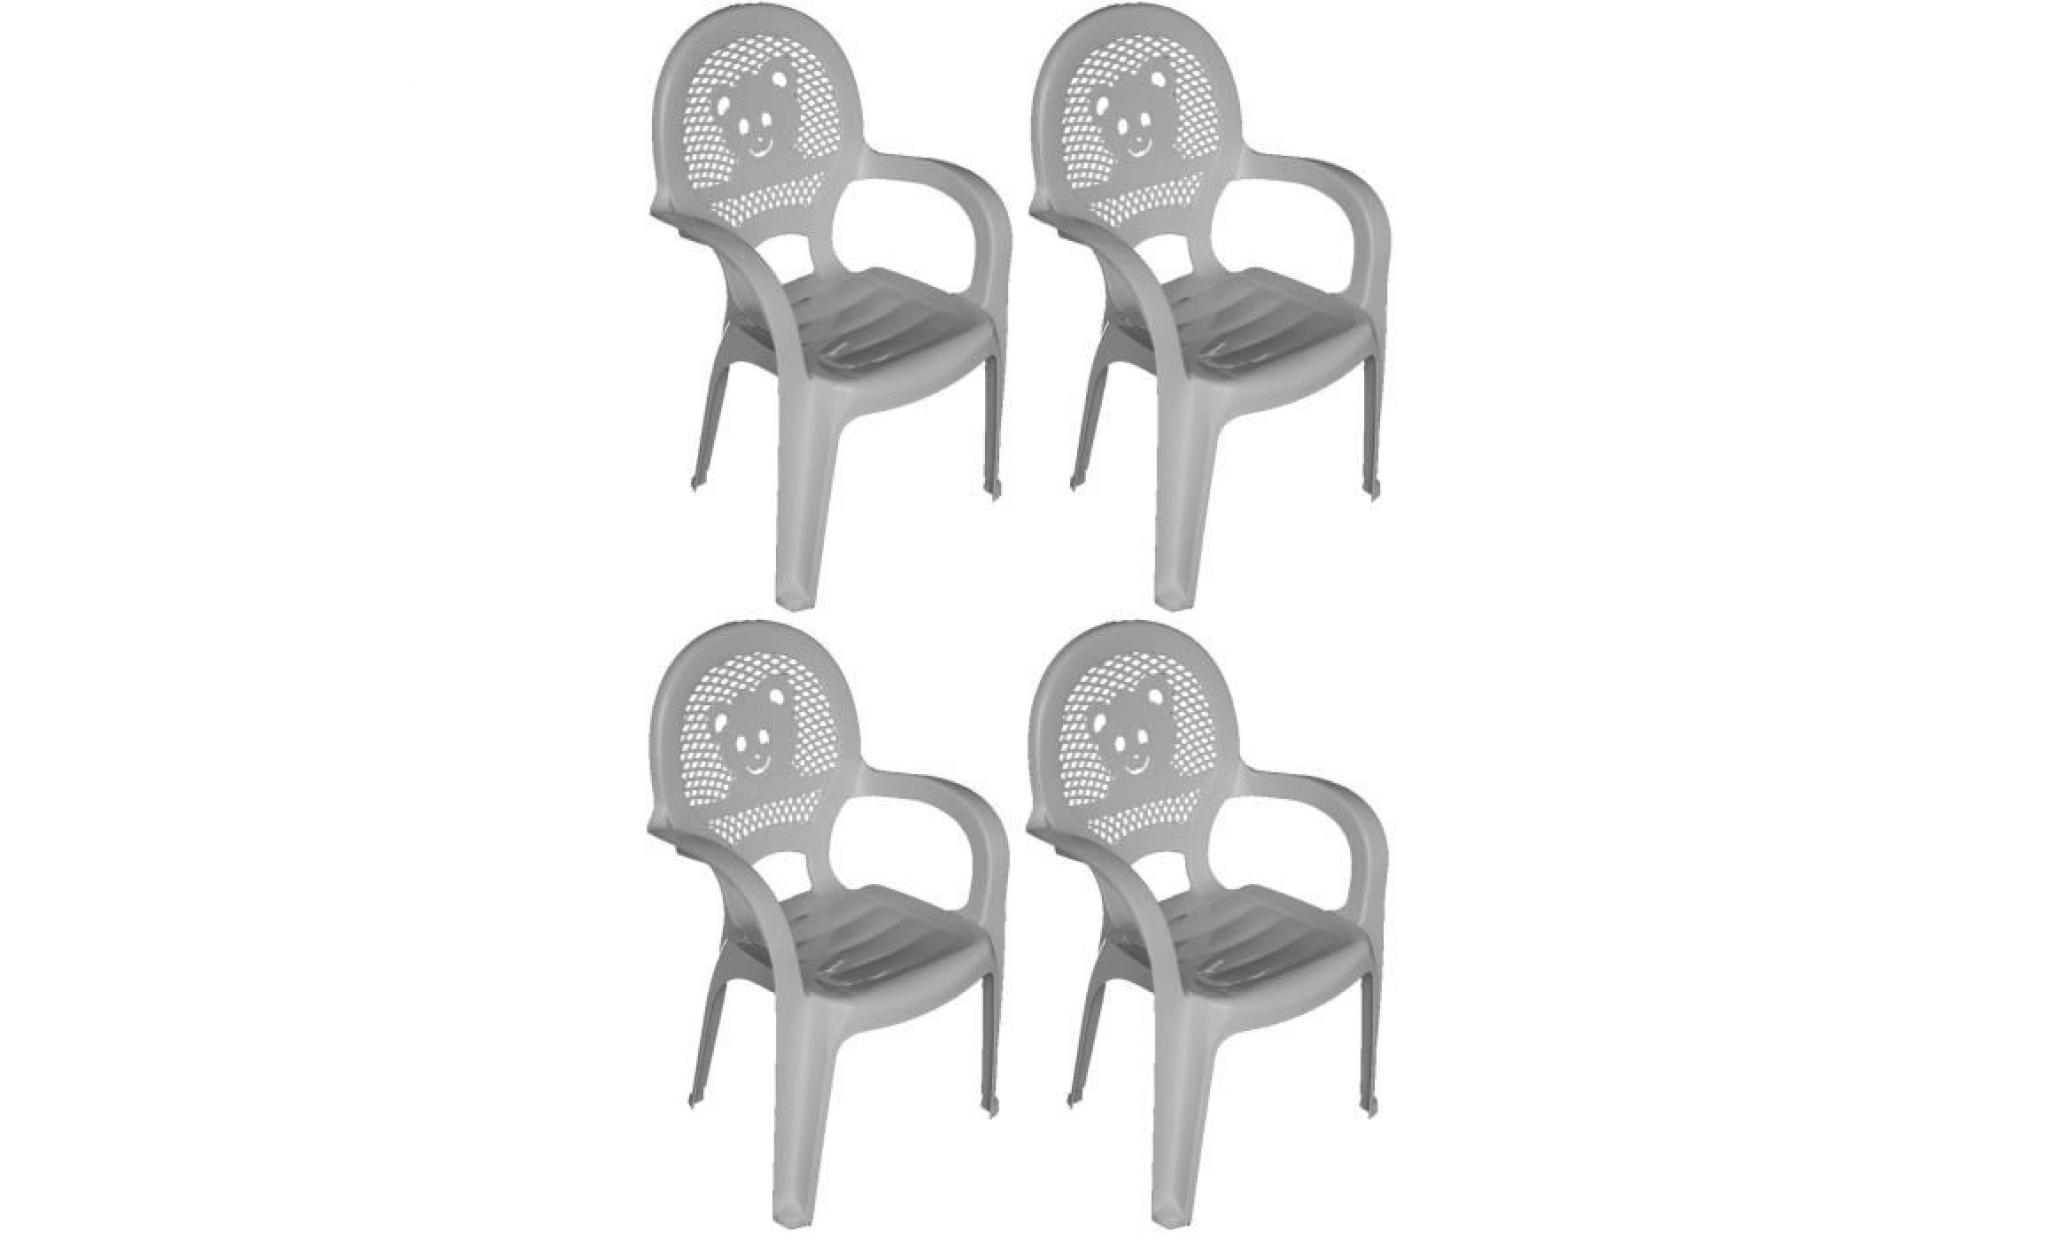 resol   enfants enfants jardin extérieur chaise en plastique   rouge   enfants meubles (pack de 4 chaises)